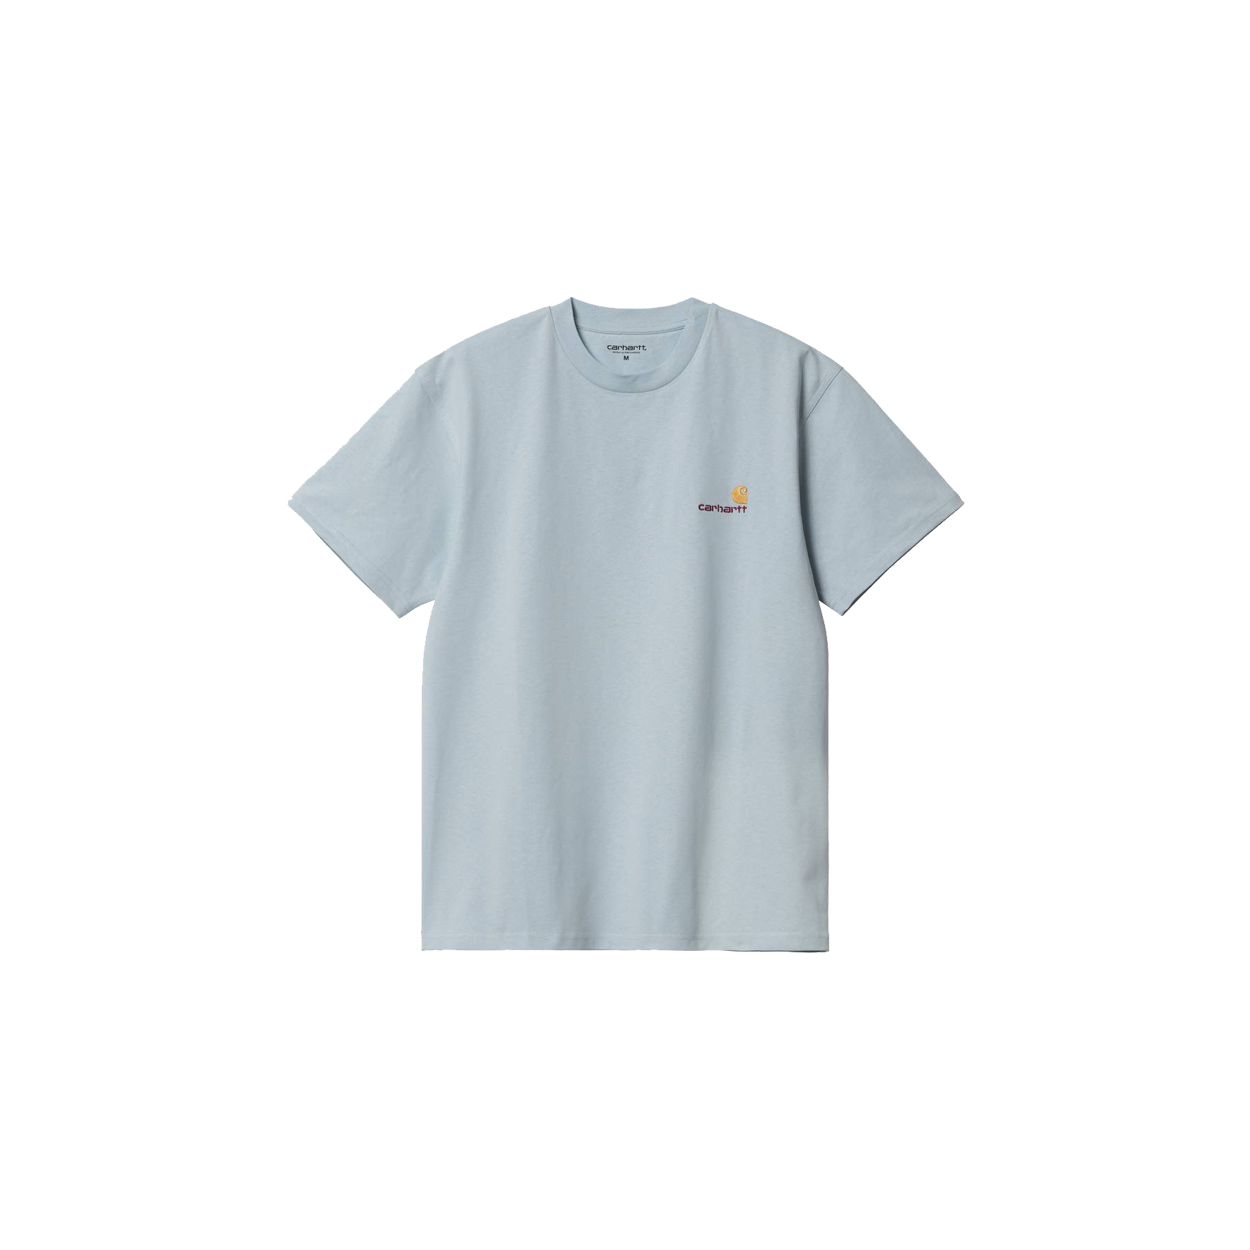 CARHARTT WIP: T-shirt homme - Gris